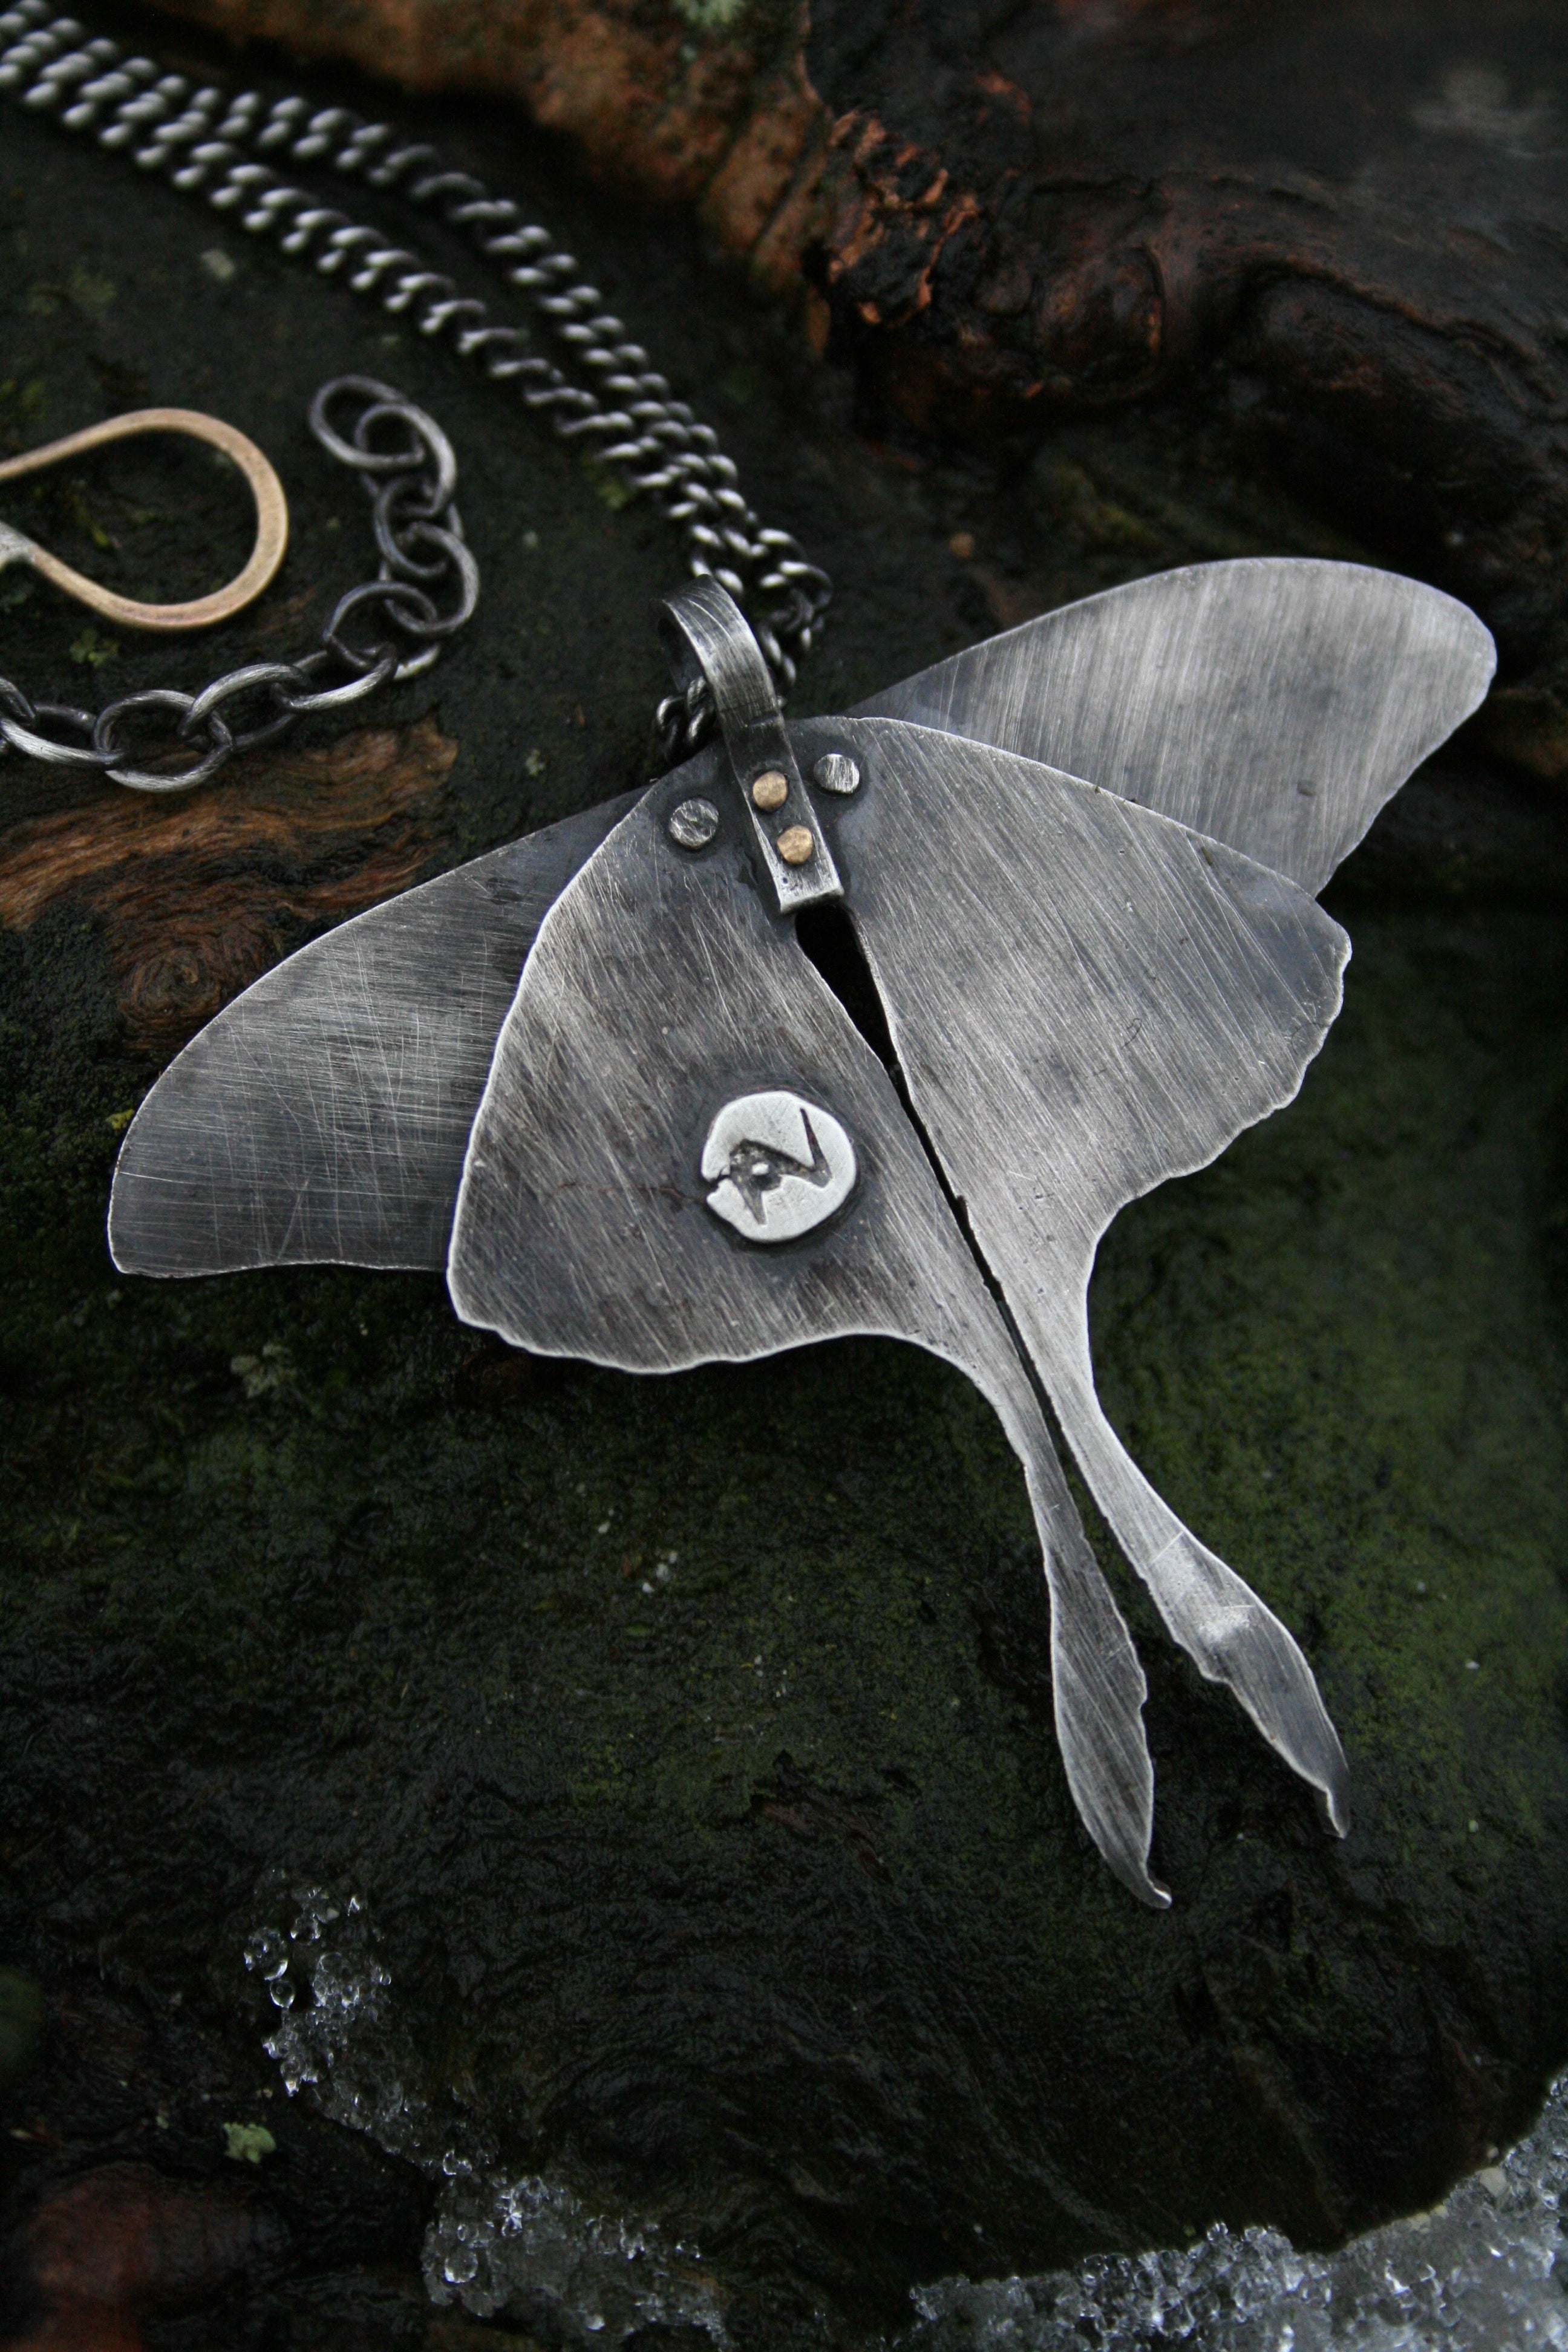 Luna Moth Necklace